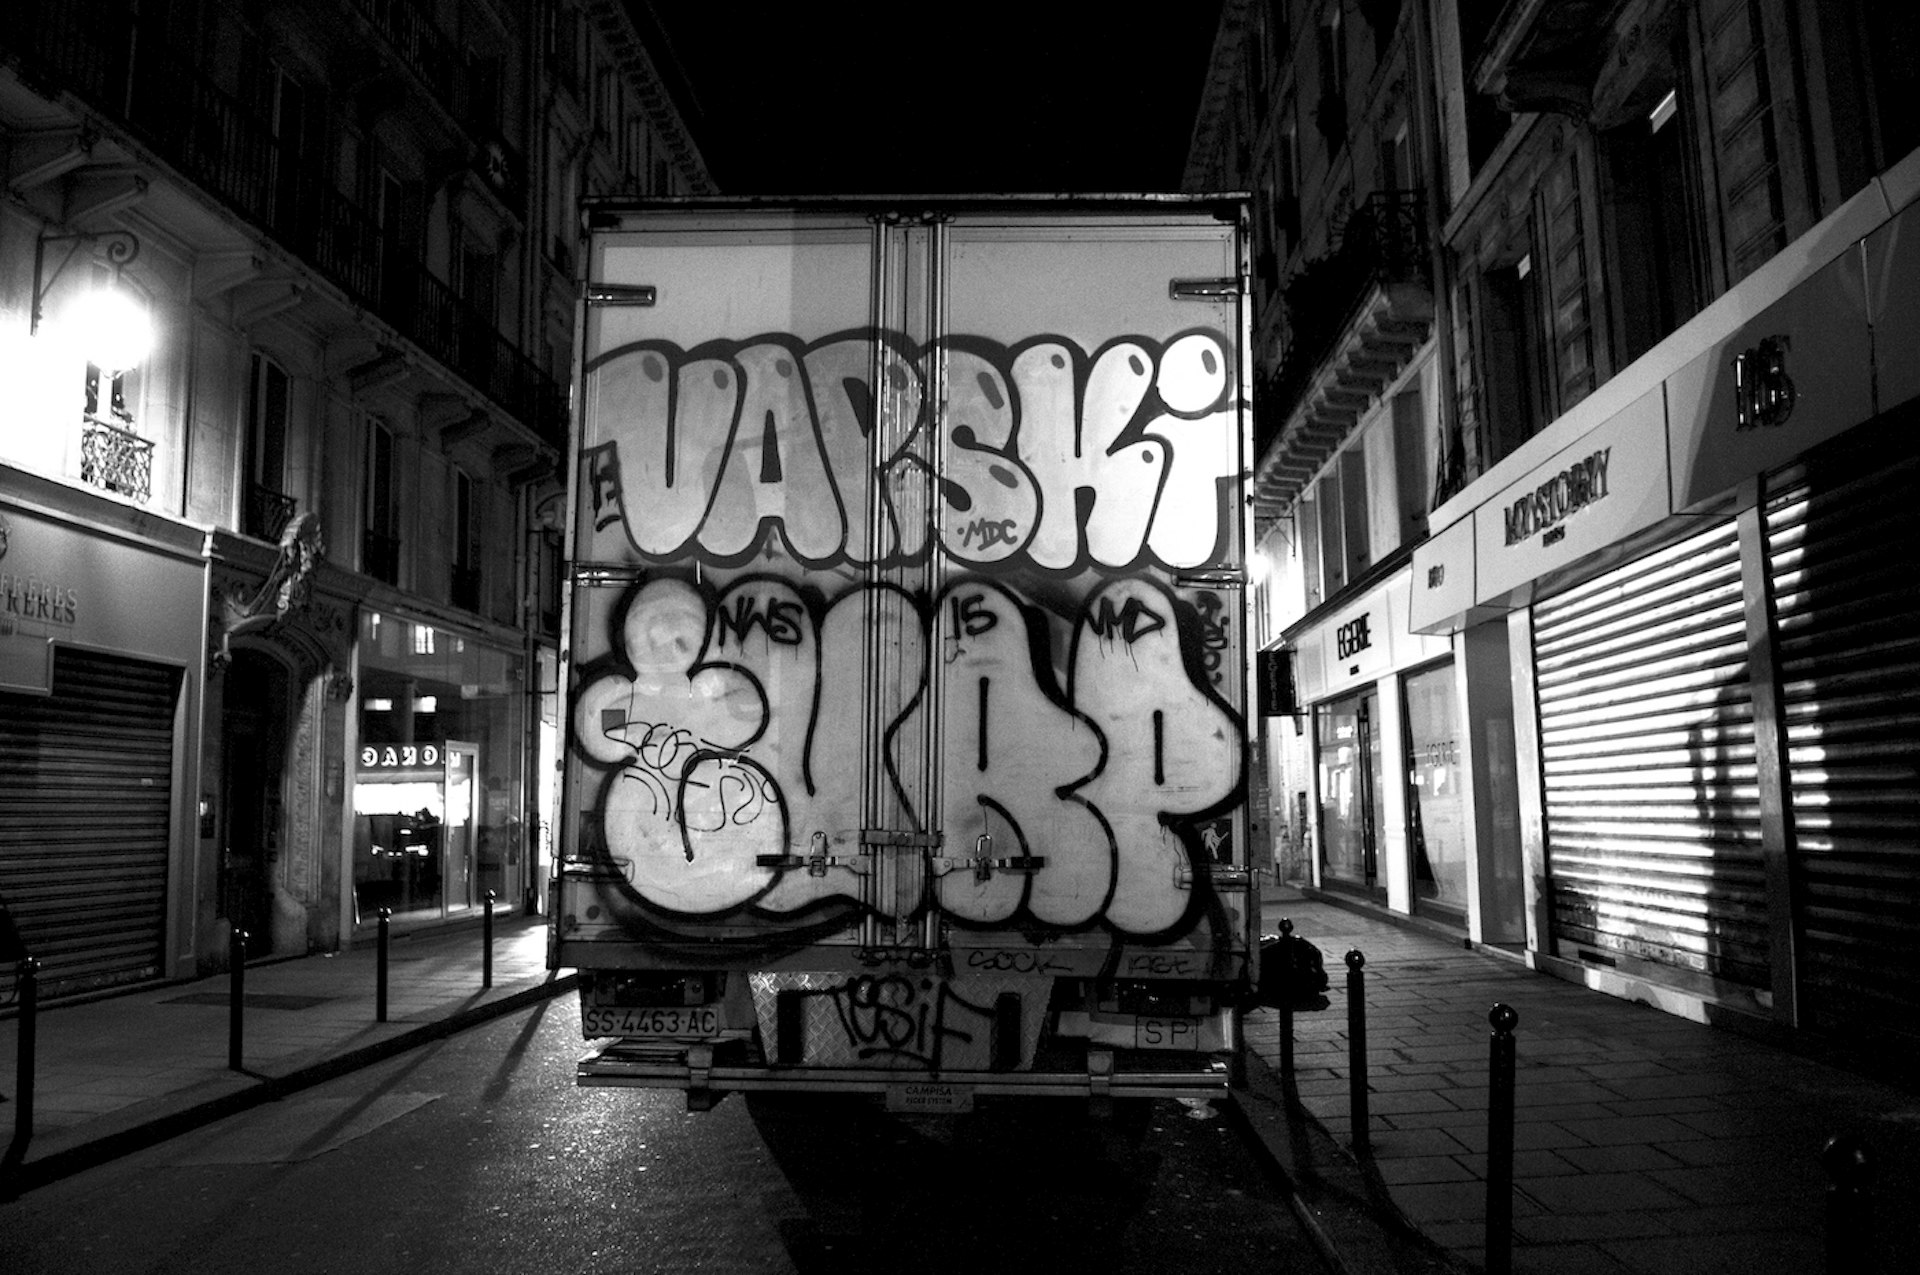 Shooting the Graffiti Trucks of Paris